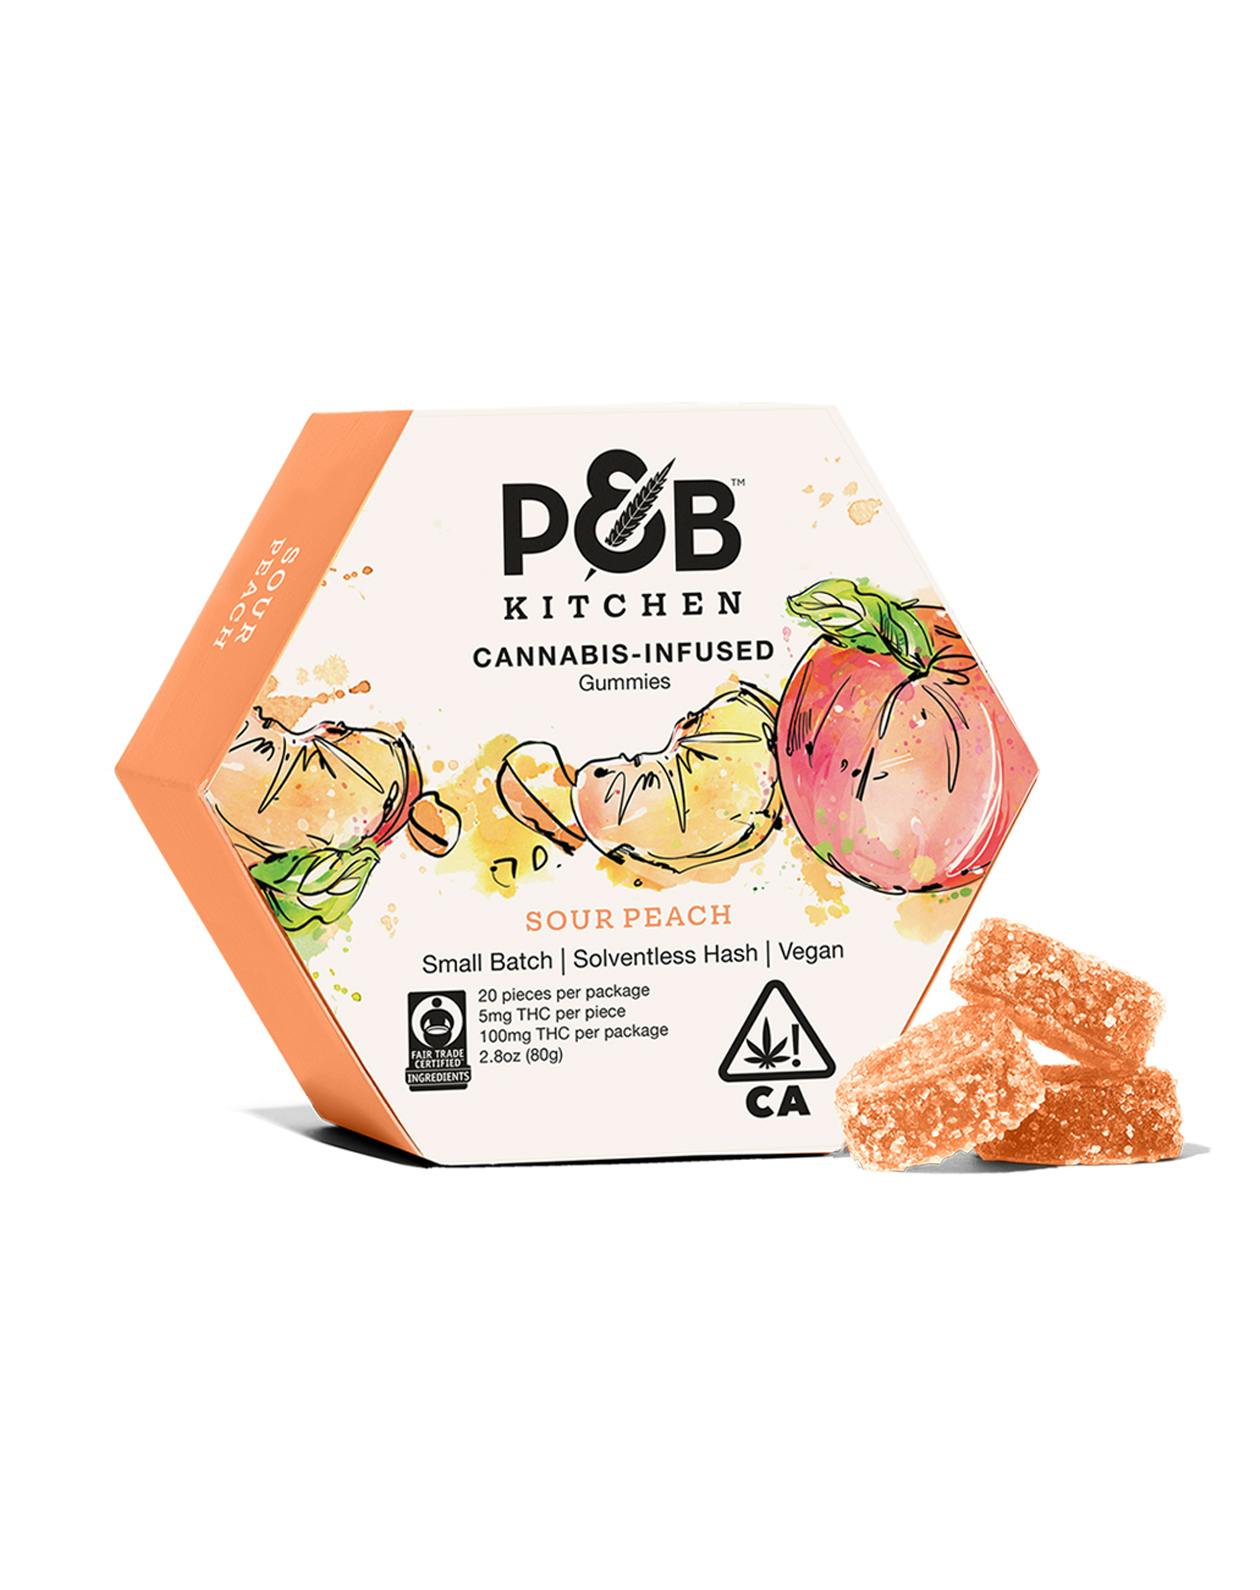 PB Kitchen Gummies Sour Peach 01 PDP